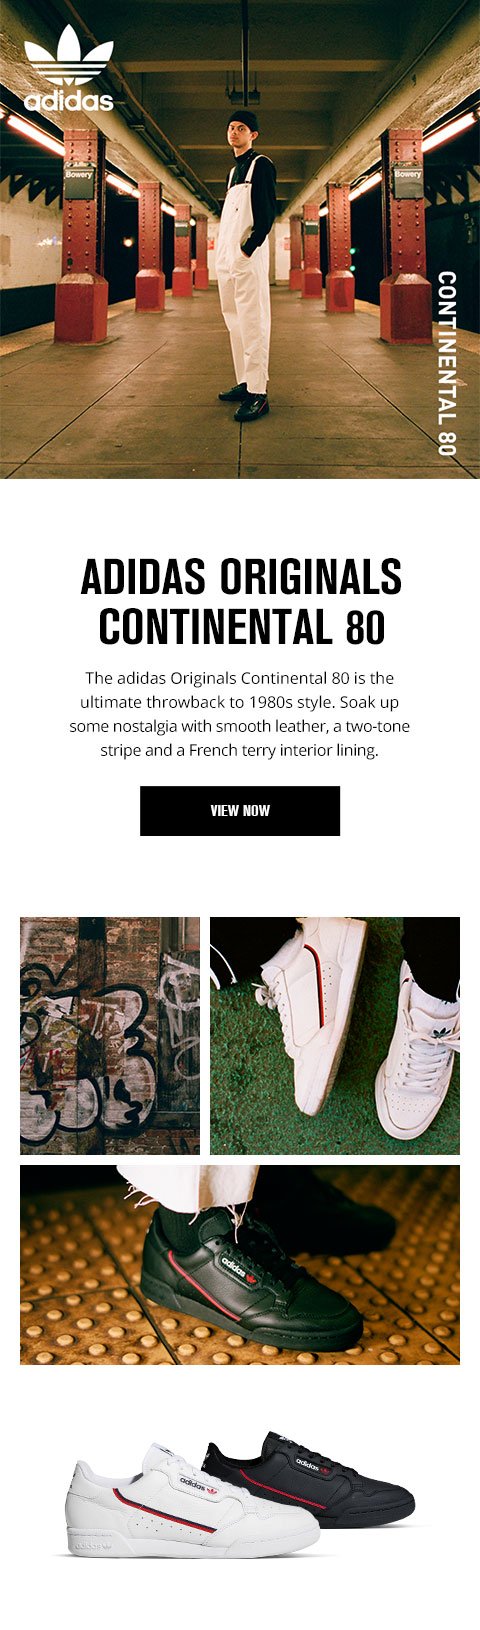 foot locker adidas original continental 80